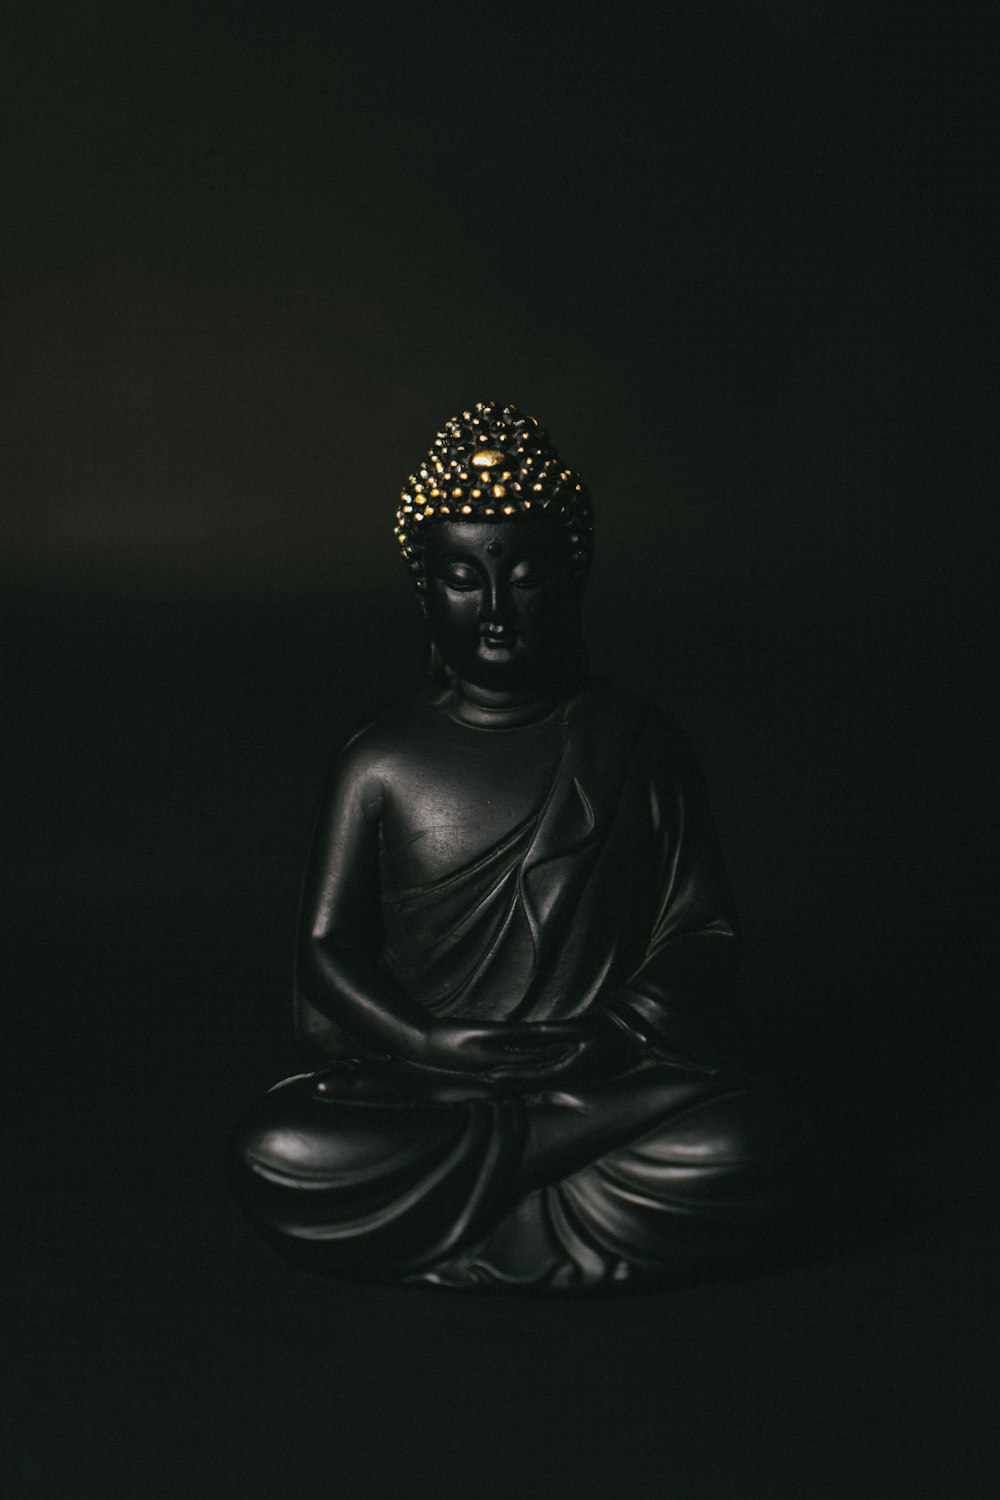 estátua preta de Gautama Buddhadha no fundo preto